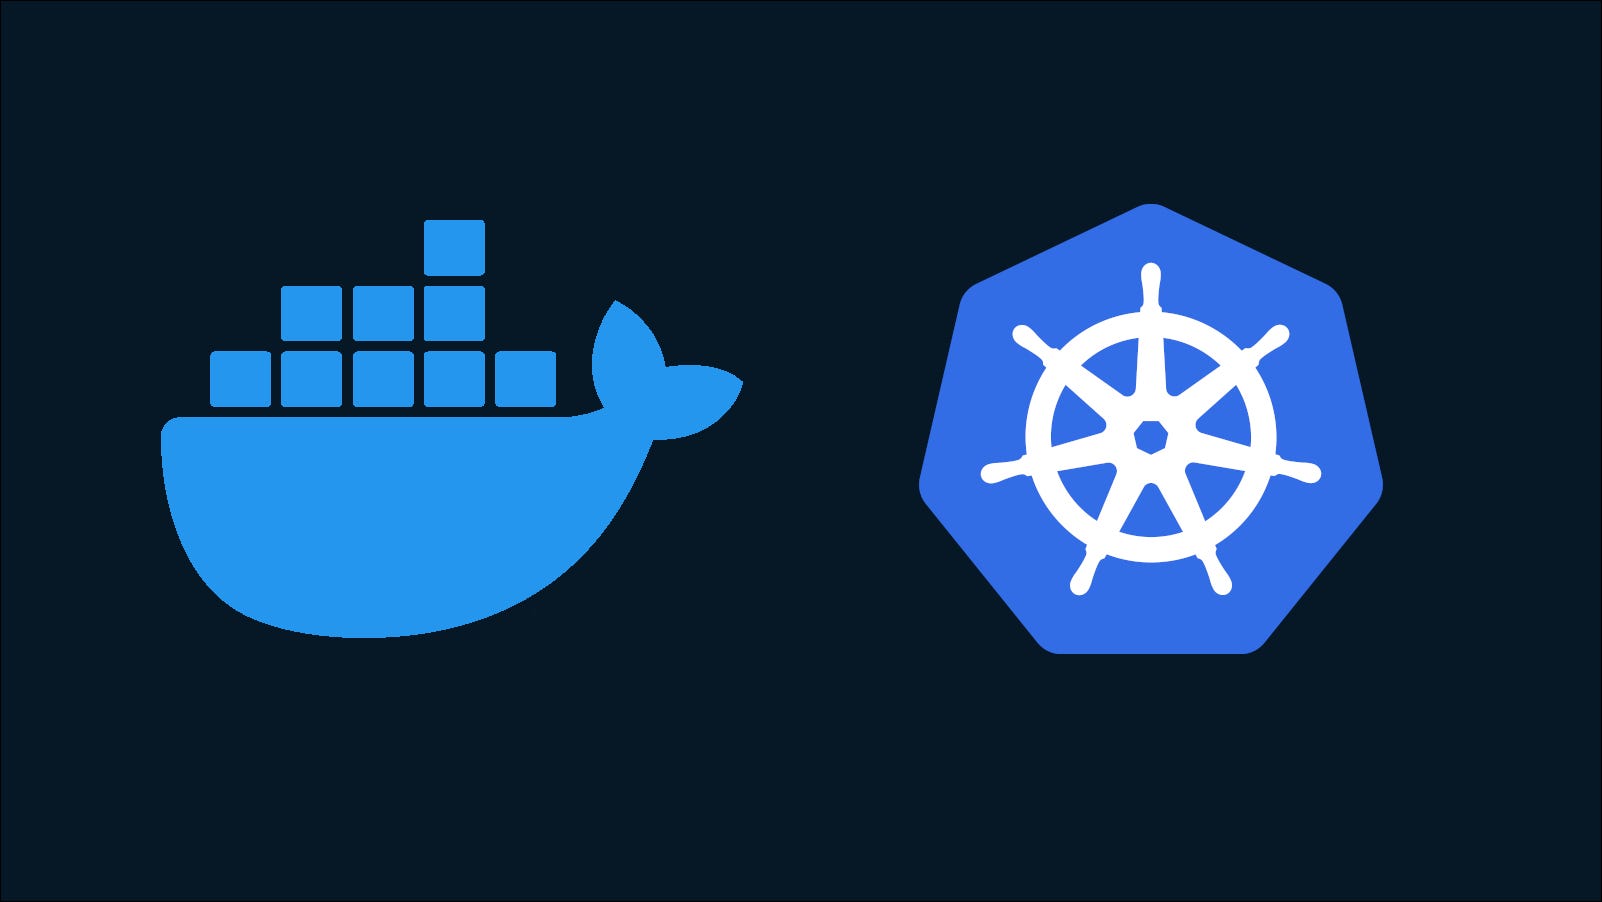 Ilustración que muestra los logotipos de Docker y Kubernetes